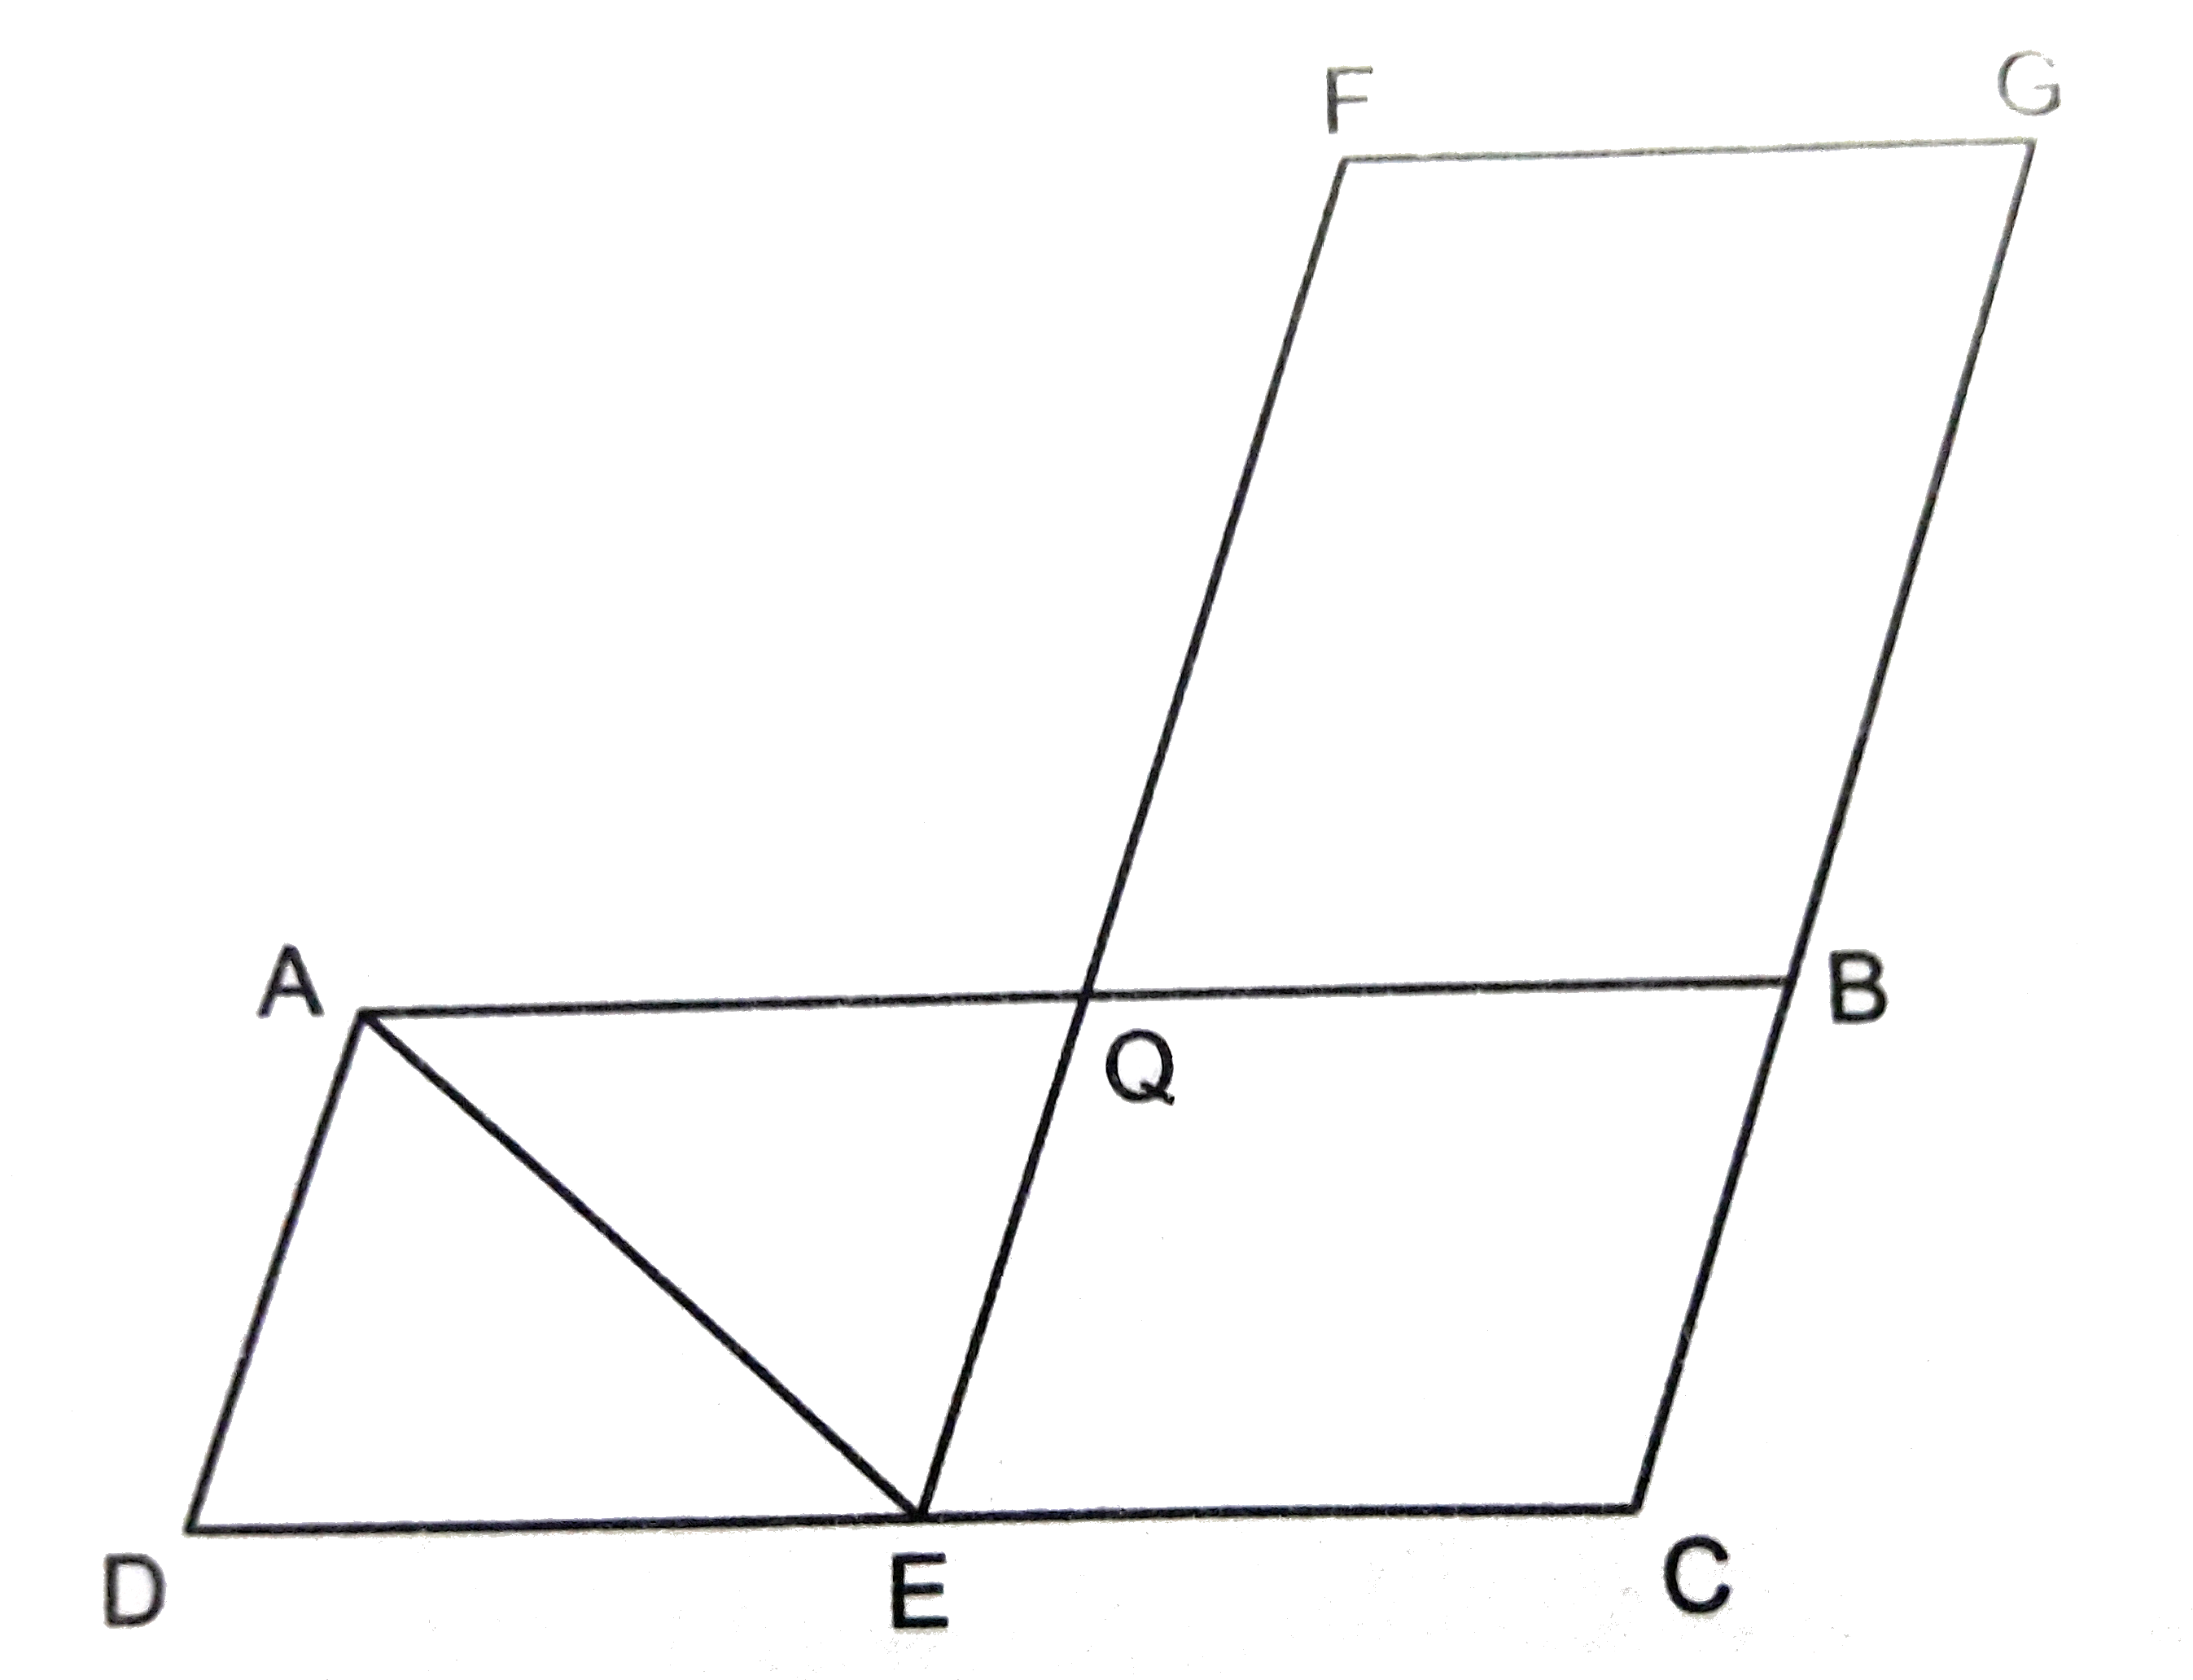 चित्र में ABCD तथा FECG समान क्षेत्रफल की दो समांतर चतुर्भुज है। यदि  ar(DeltaAQE)=12 वर्ग सेमी, ar(